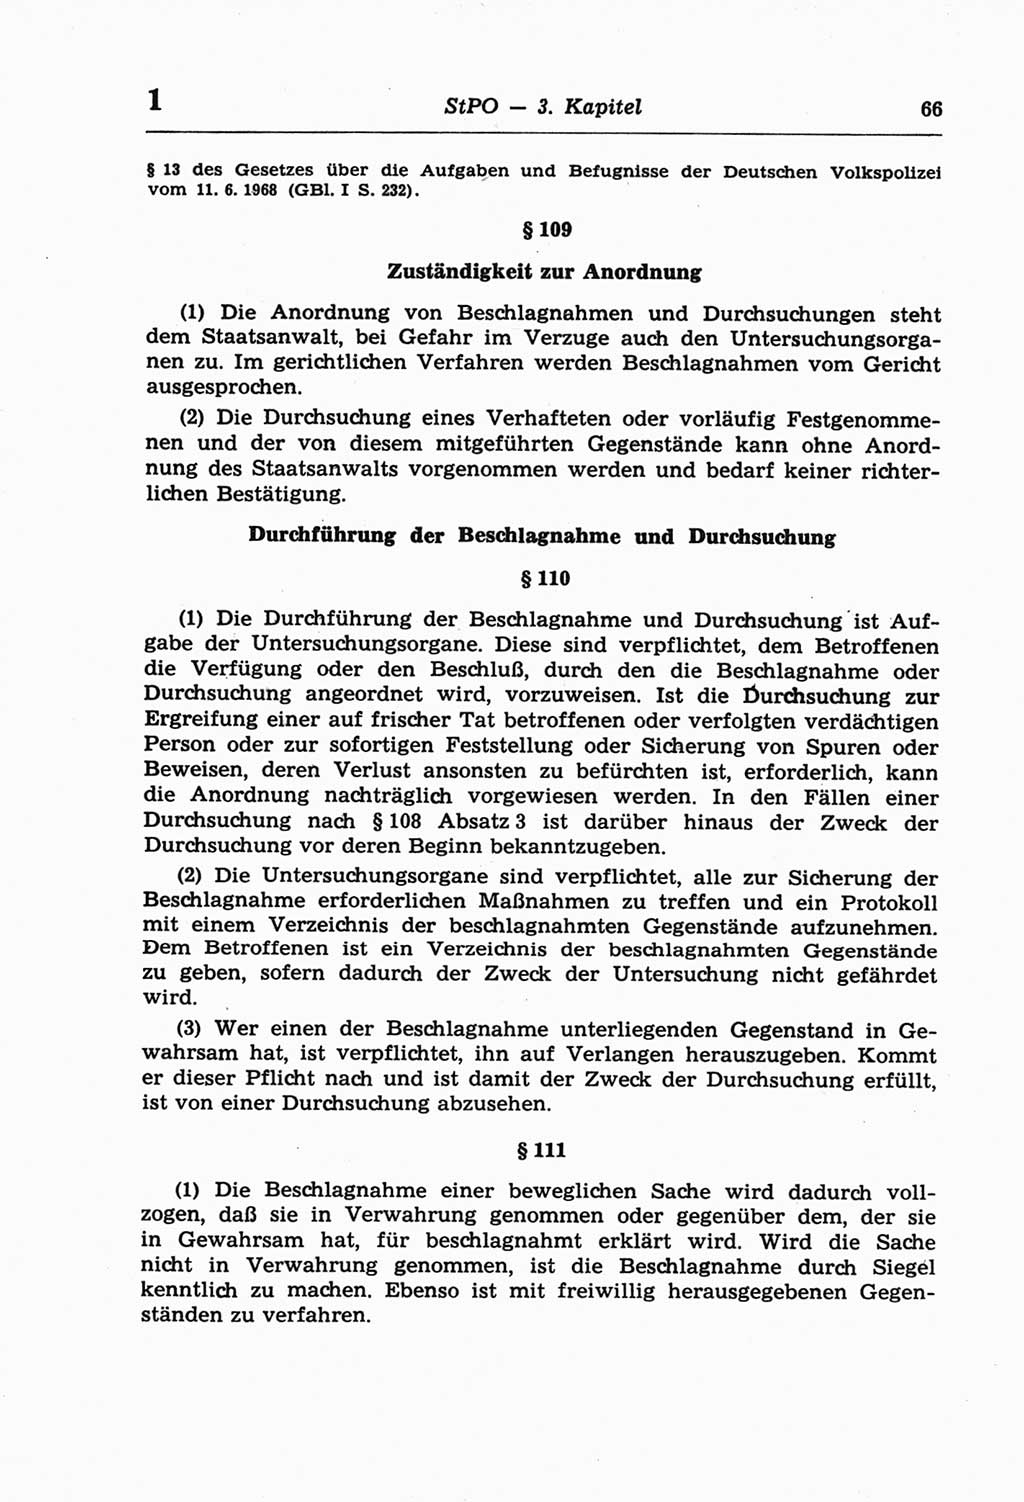 Strafprozeßordnung (StPO) der Deutschen Demokratischen Republik (DDR) und angrenzende Gesetze und Bestimmungen 1968, Seite 66 (StPO Ges. Bstgn. DDR 1968, S. 66)